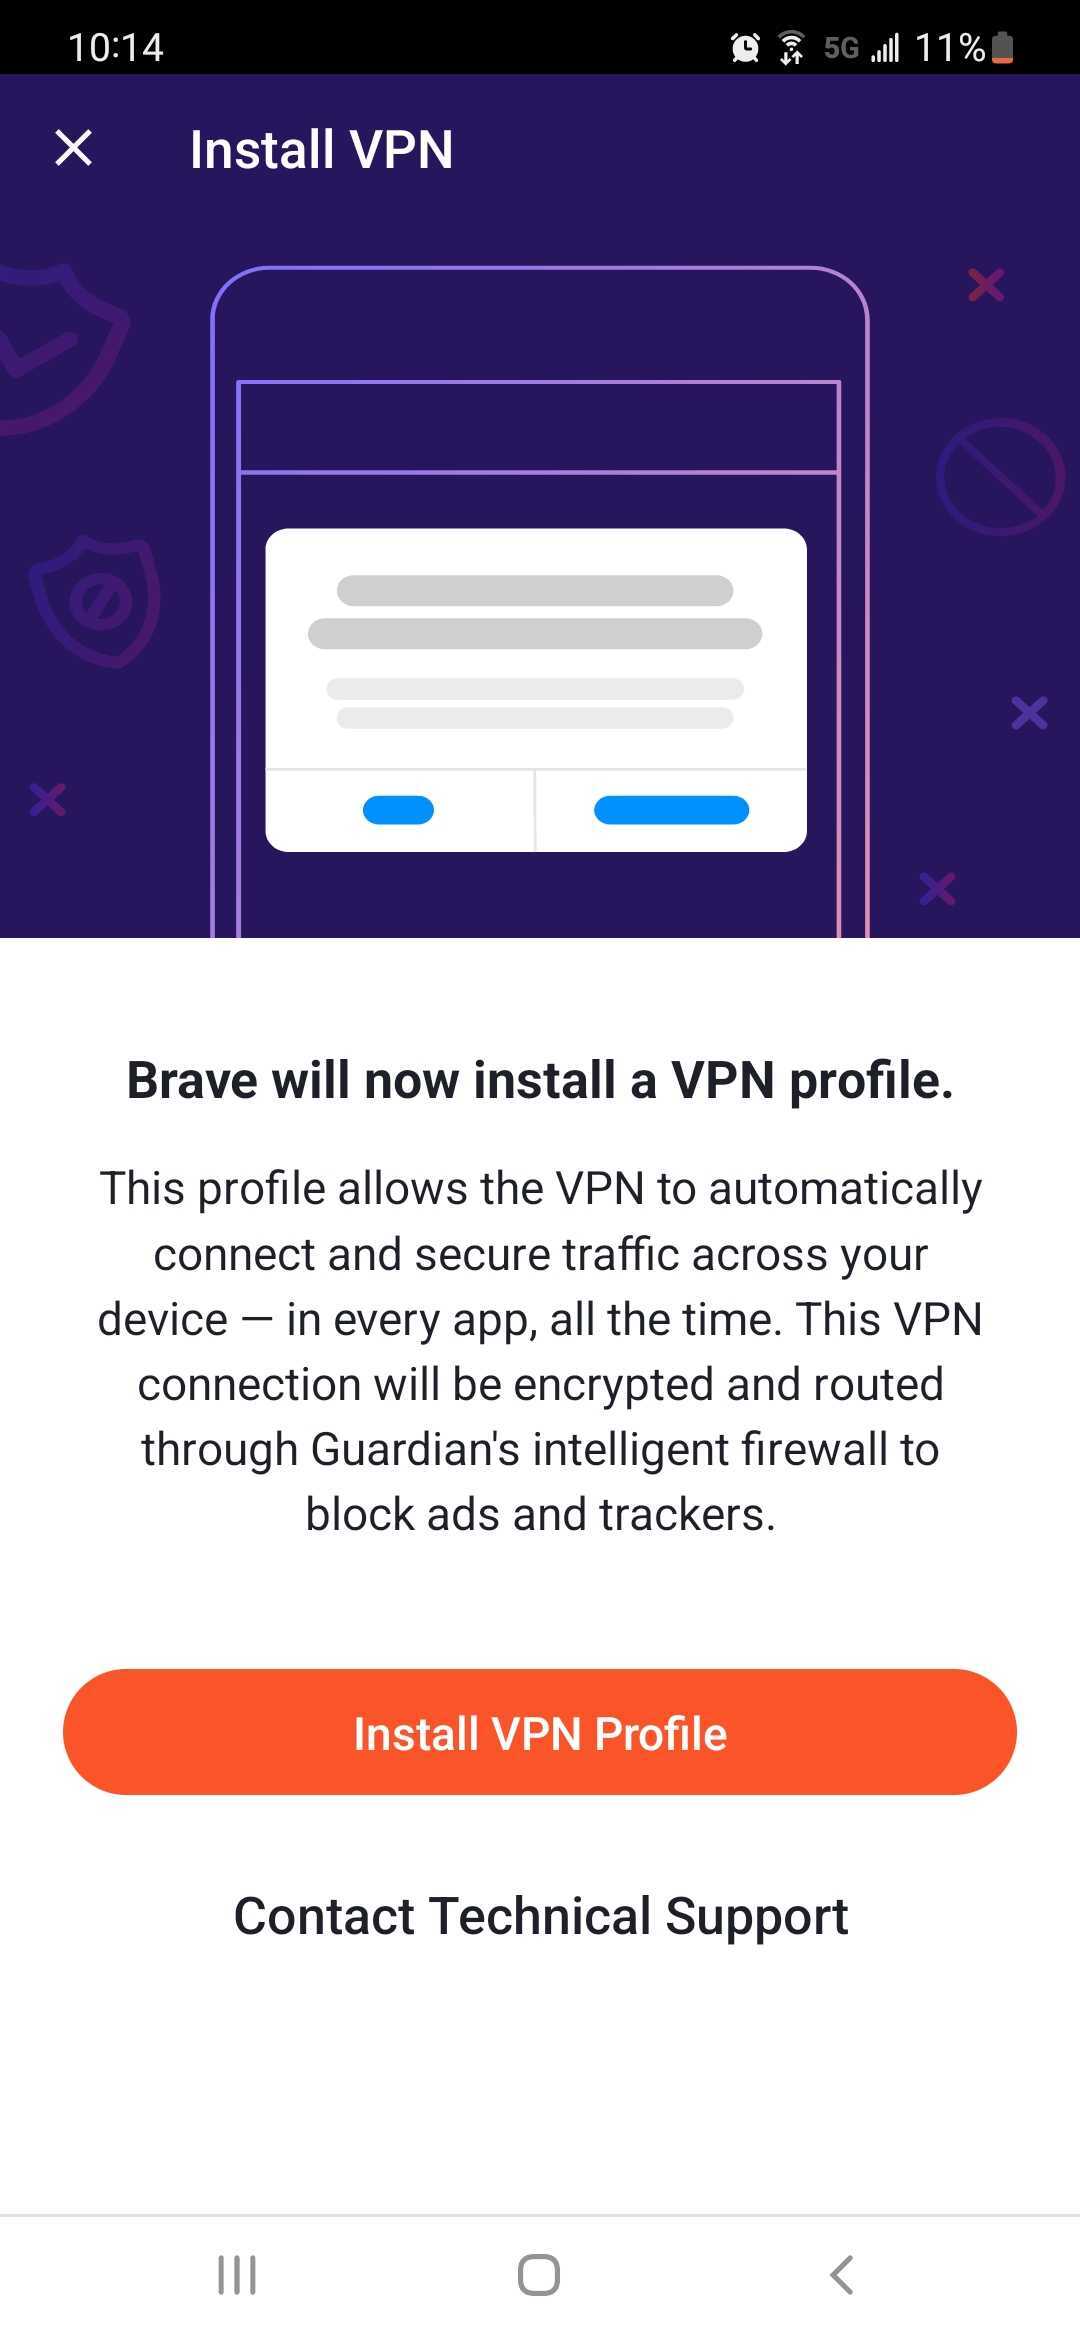 VPN_install_prof.jpg